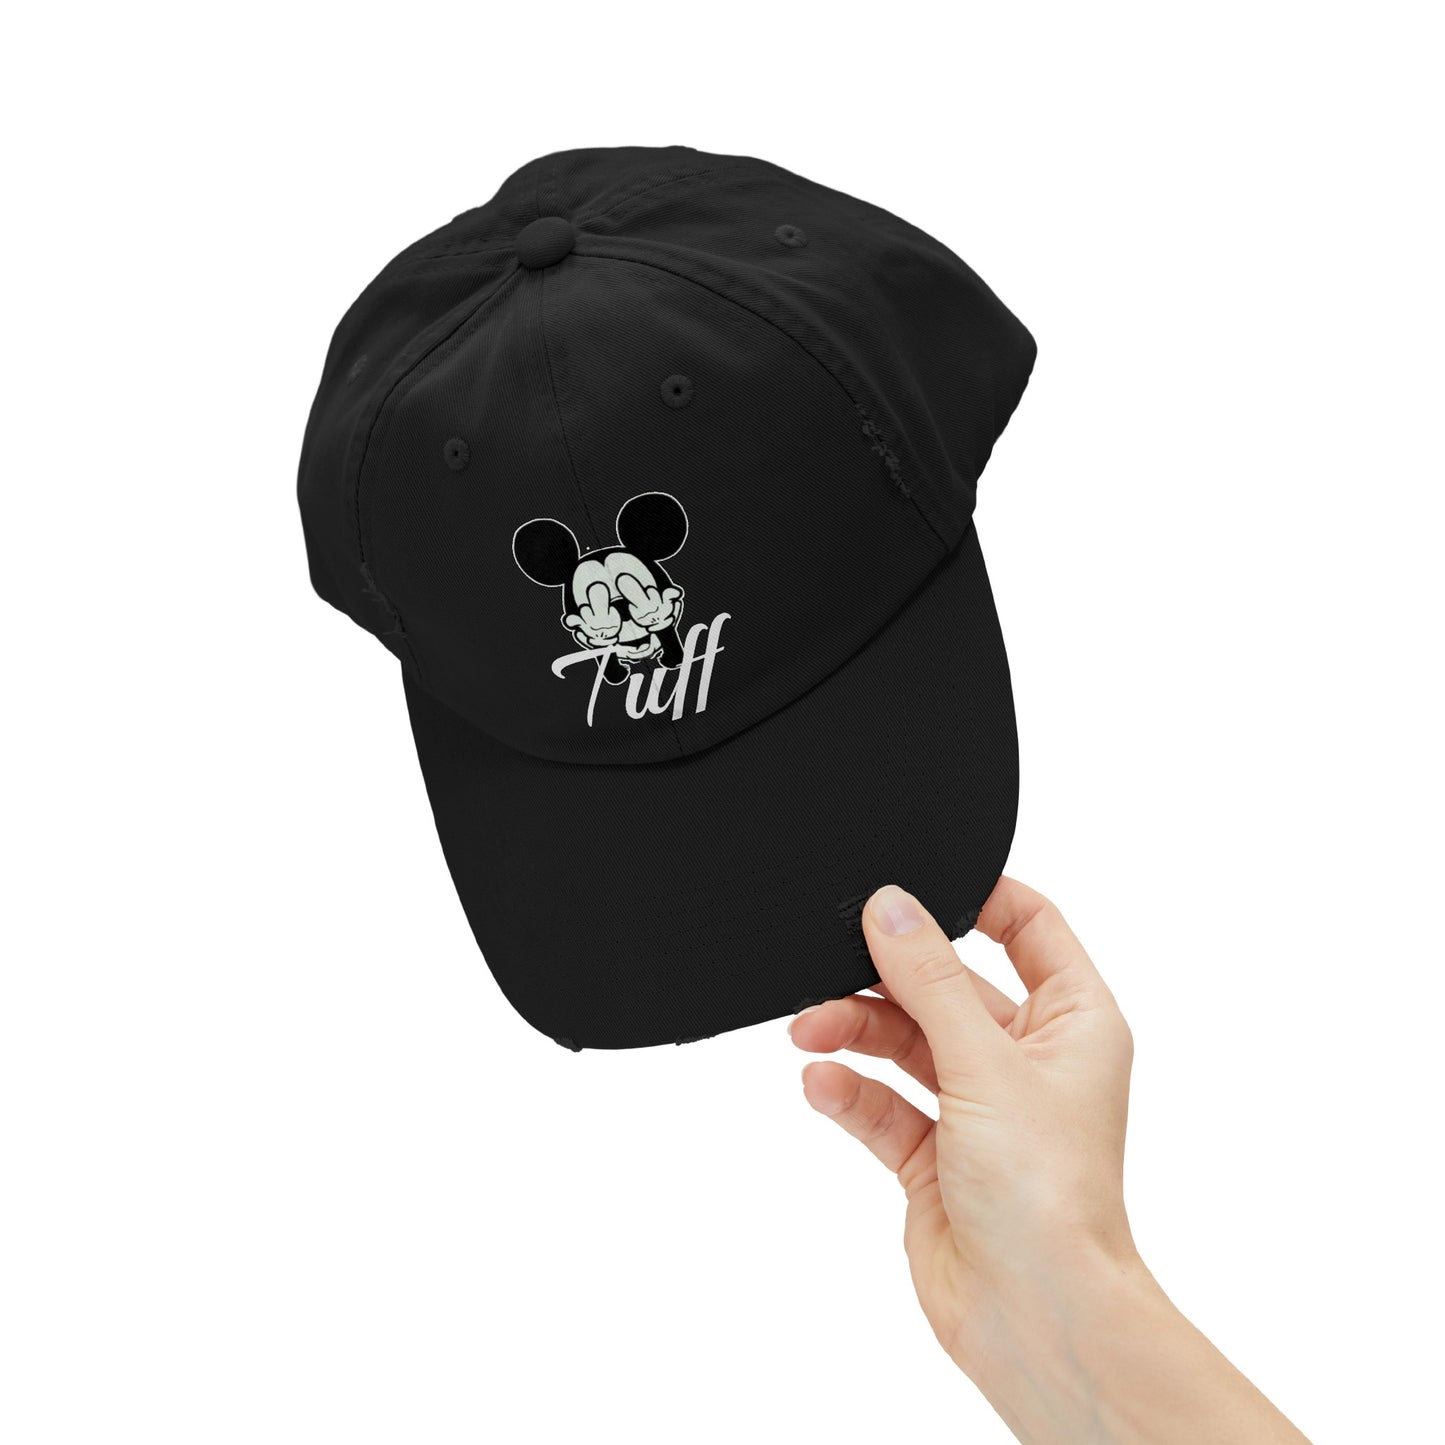 Tuff (mickey) hat